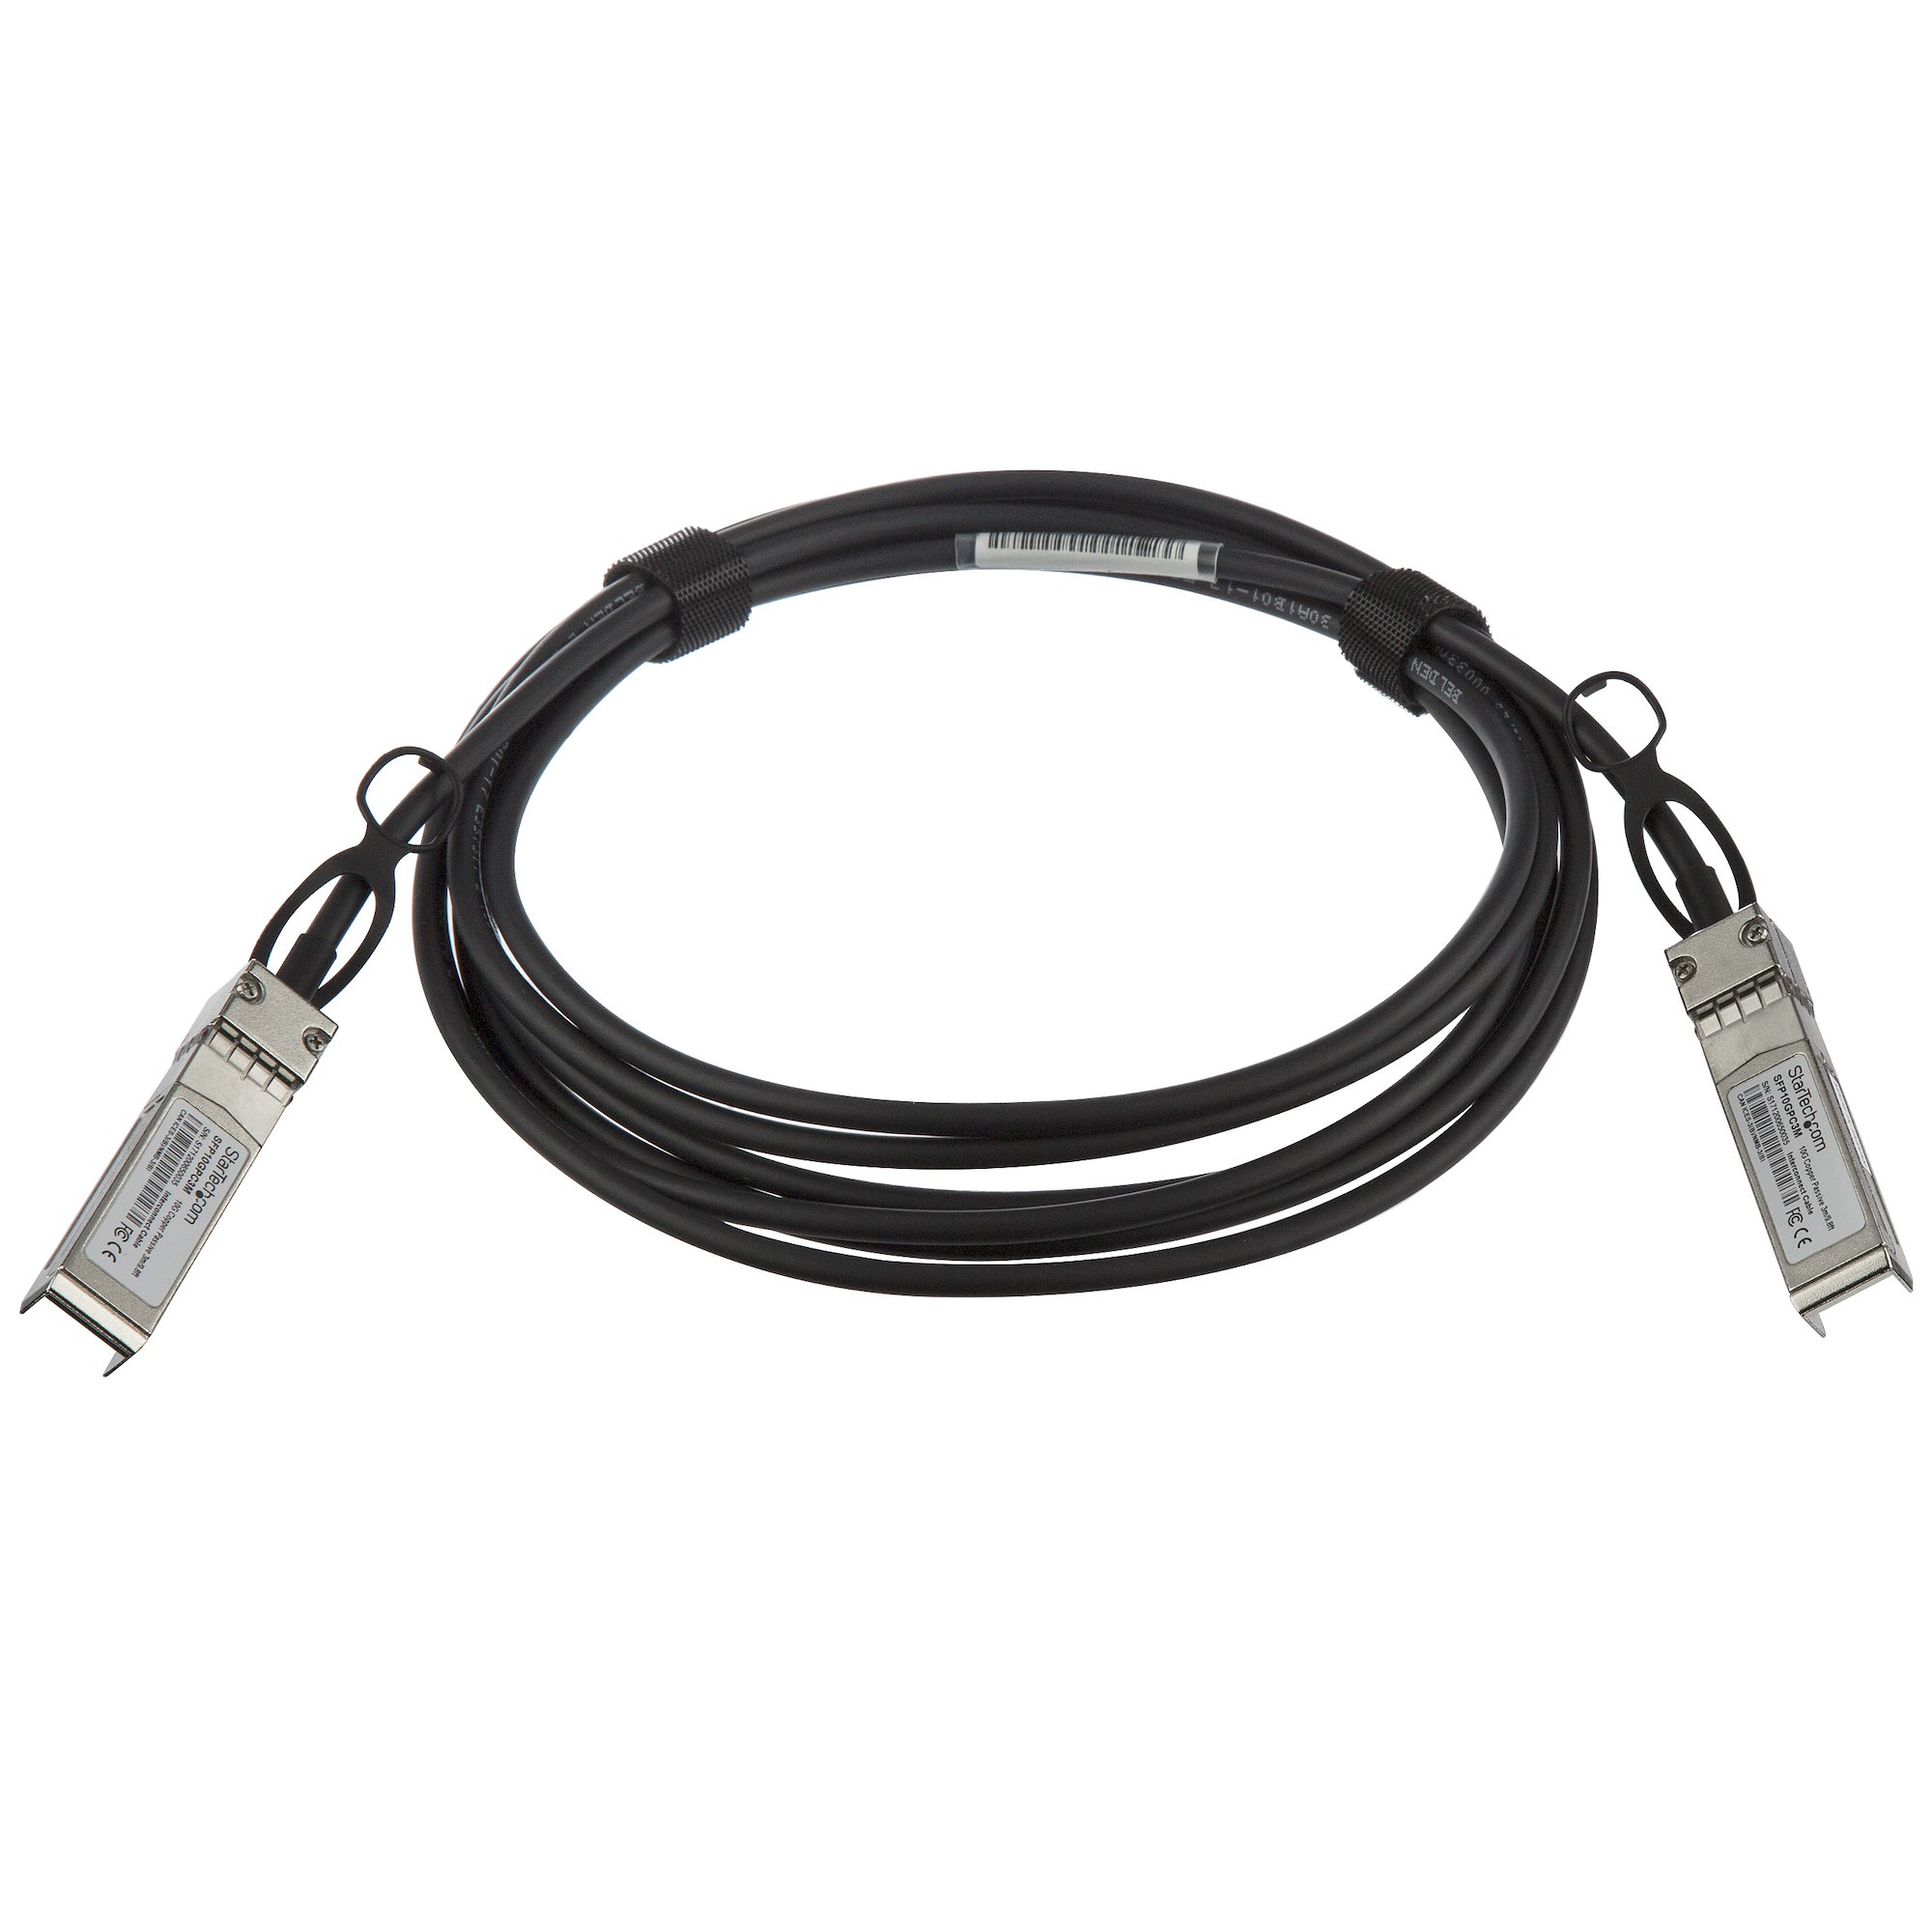 ホワイトブラウン DAC Twinax  ケーブル/3m/MSA対応アンコード/銅線ダイレクトアタッチケーブル/MSA準拠スイッチ対応 通販